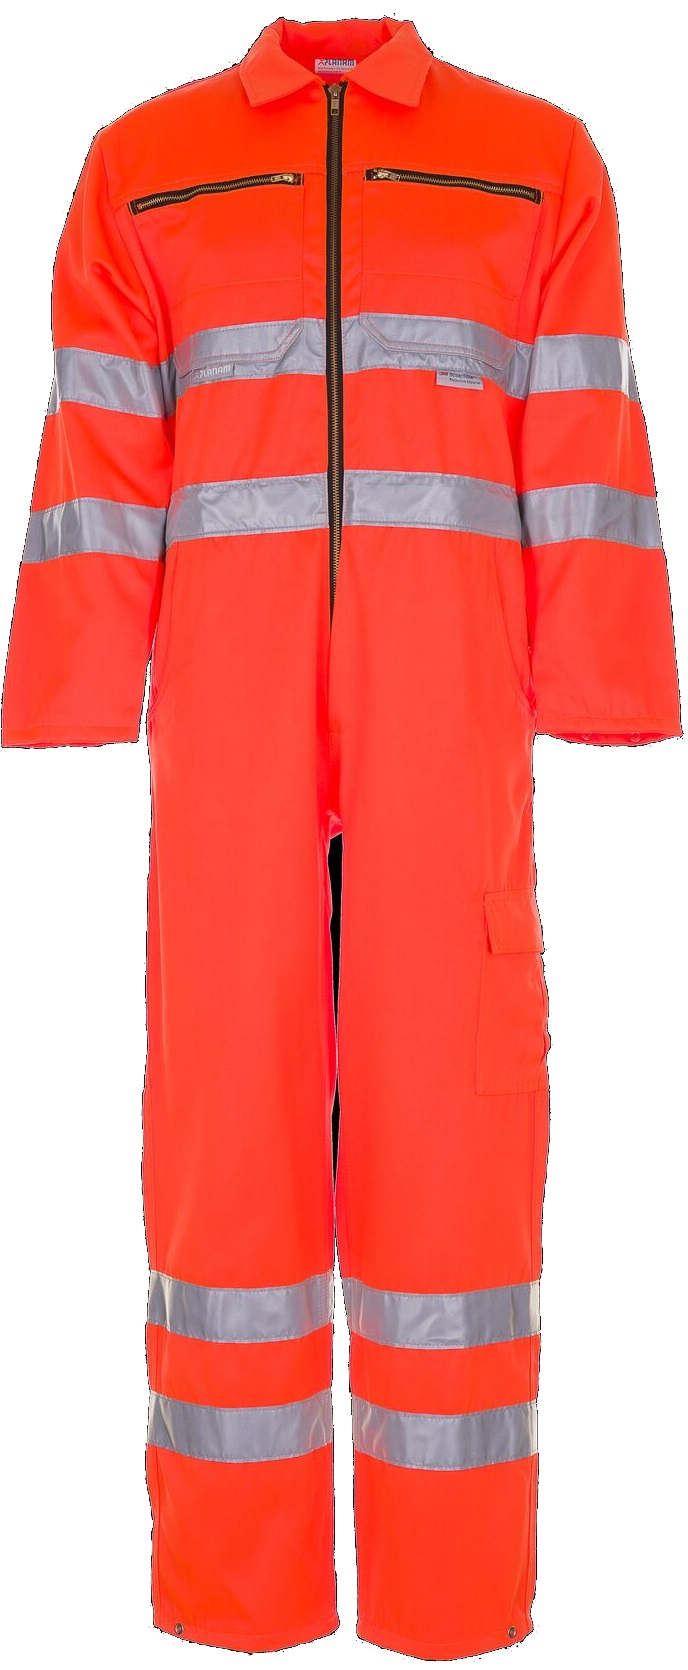 PLANAM-Warnschutz, Rallyekombi, 290 g/m², orange
